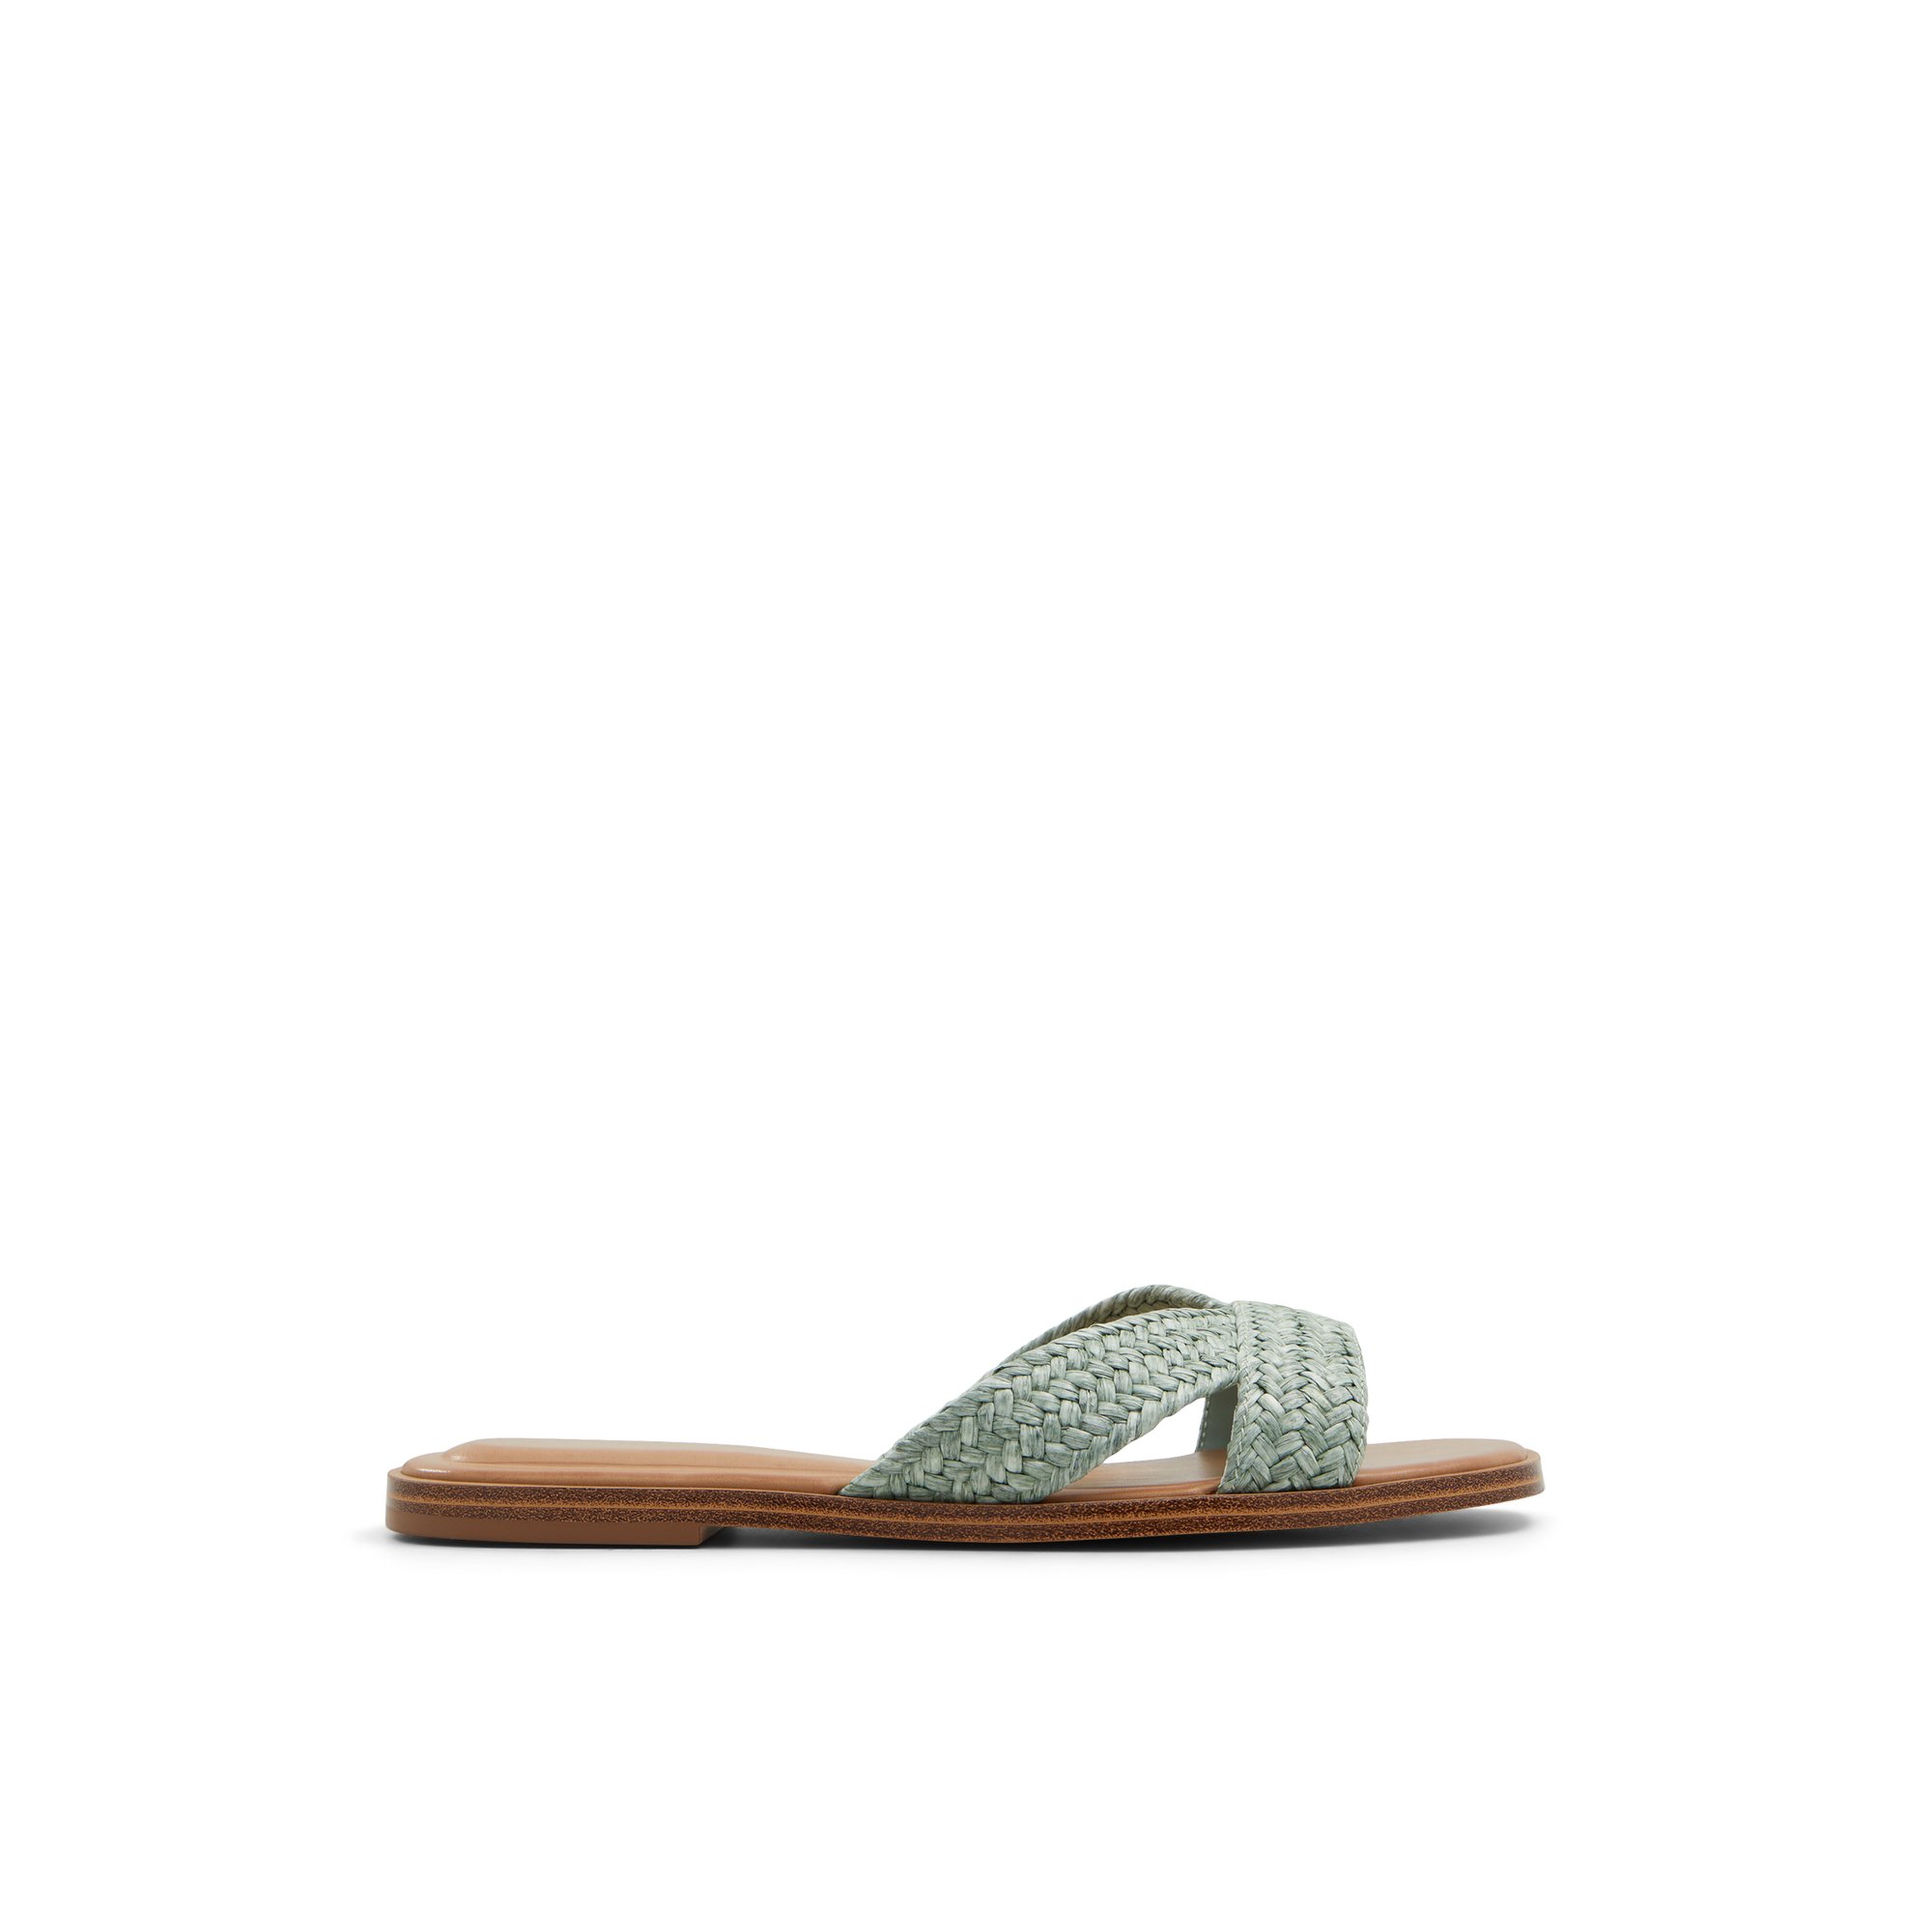 ALDO Caria - Women's Flat Sandals - Green